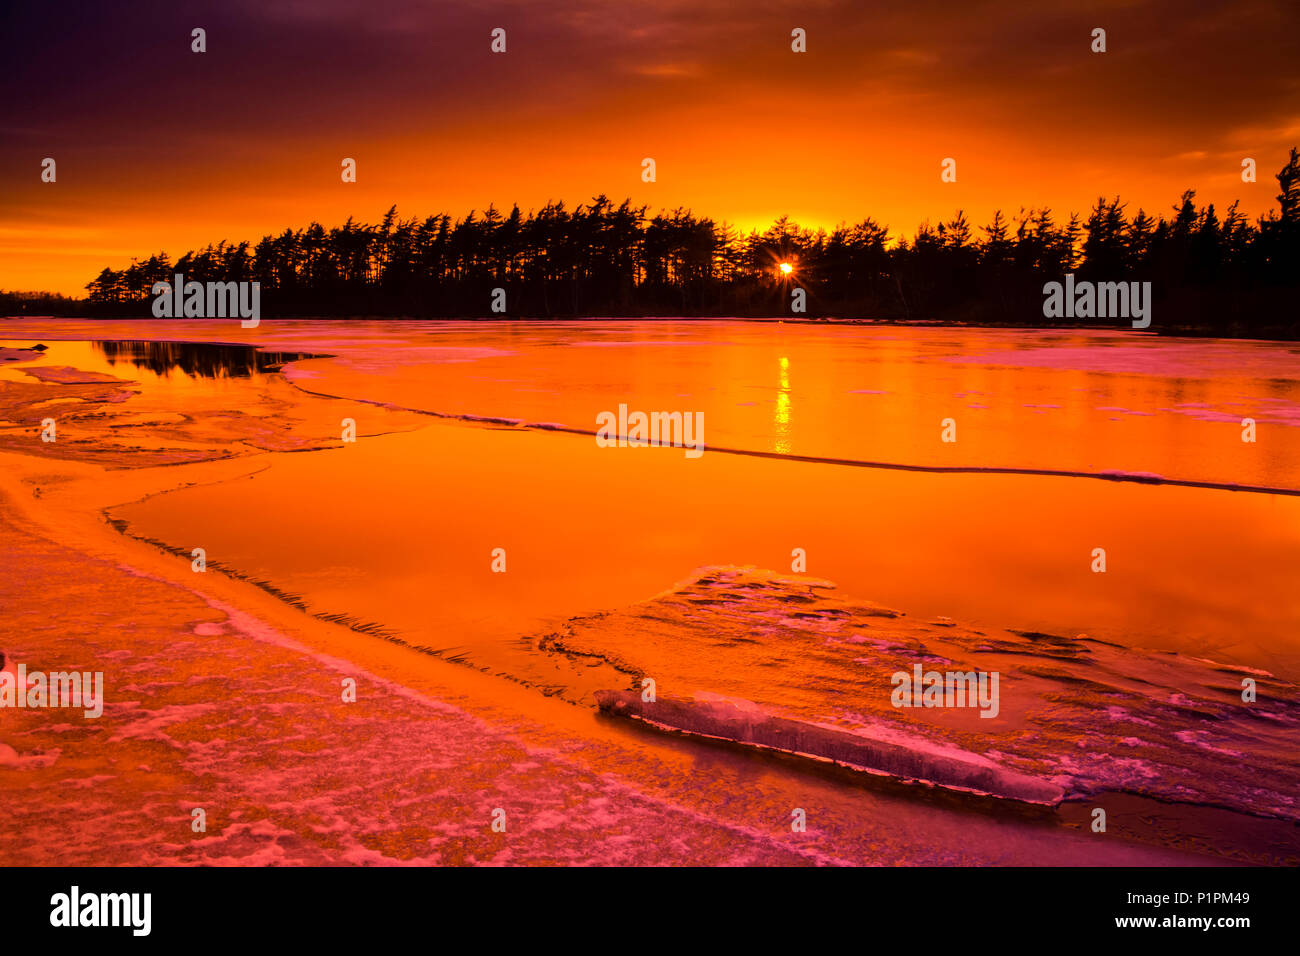 La descongelación del hielo al atardecer en el lago rocosos; Waverley, Nova Scotia, Canadá Foto de stock